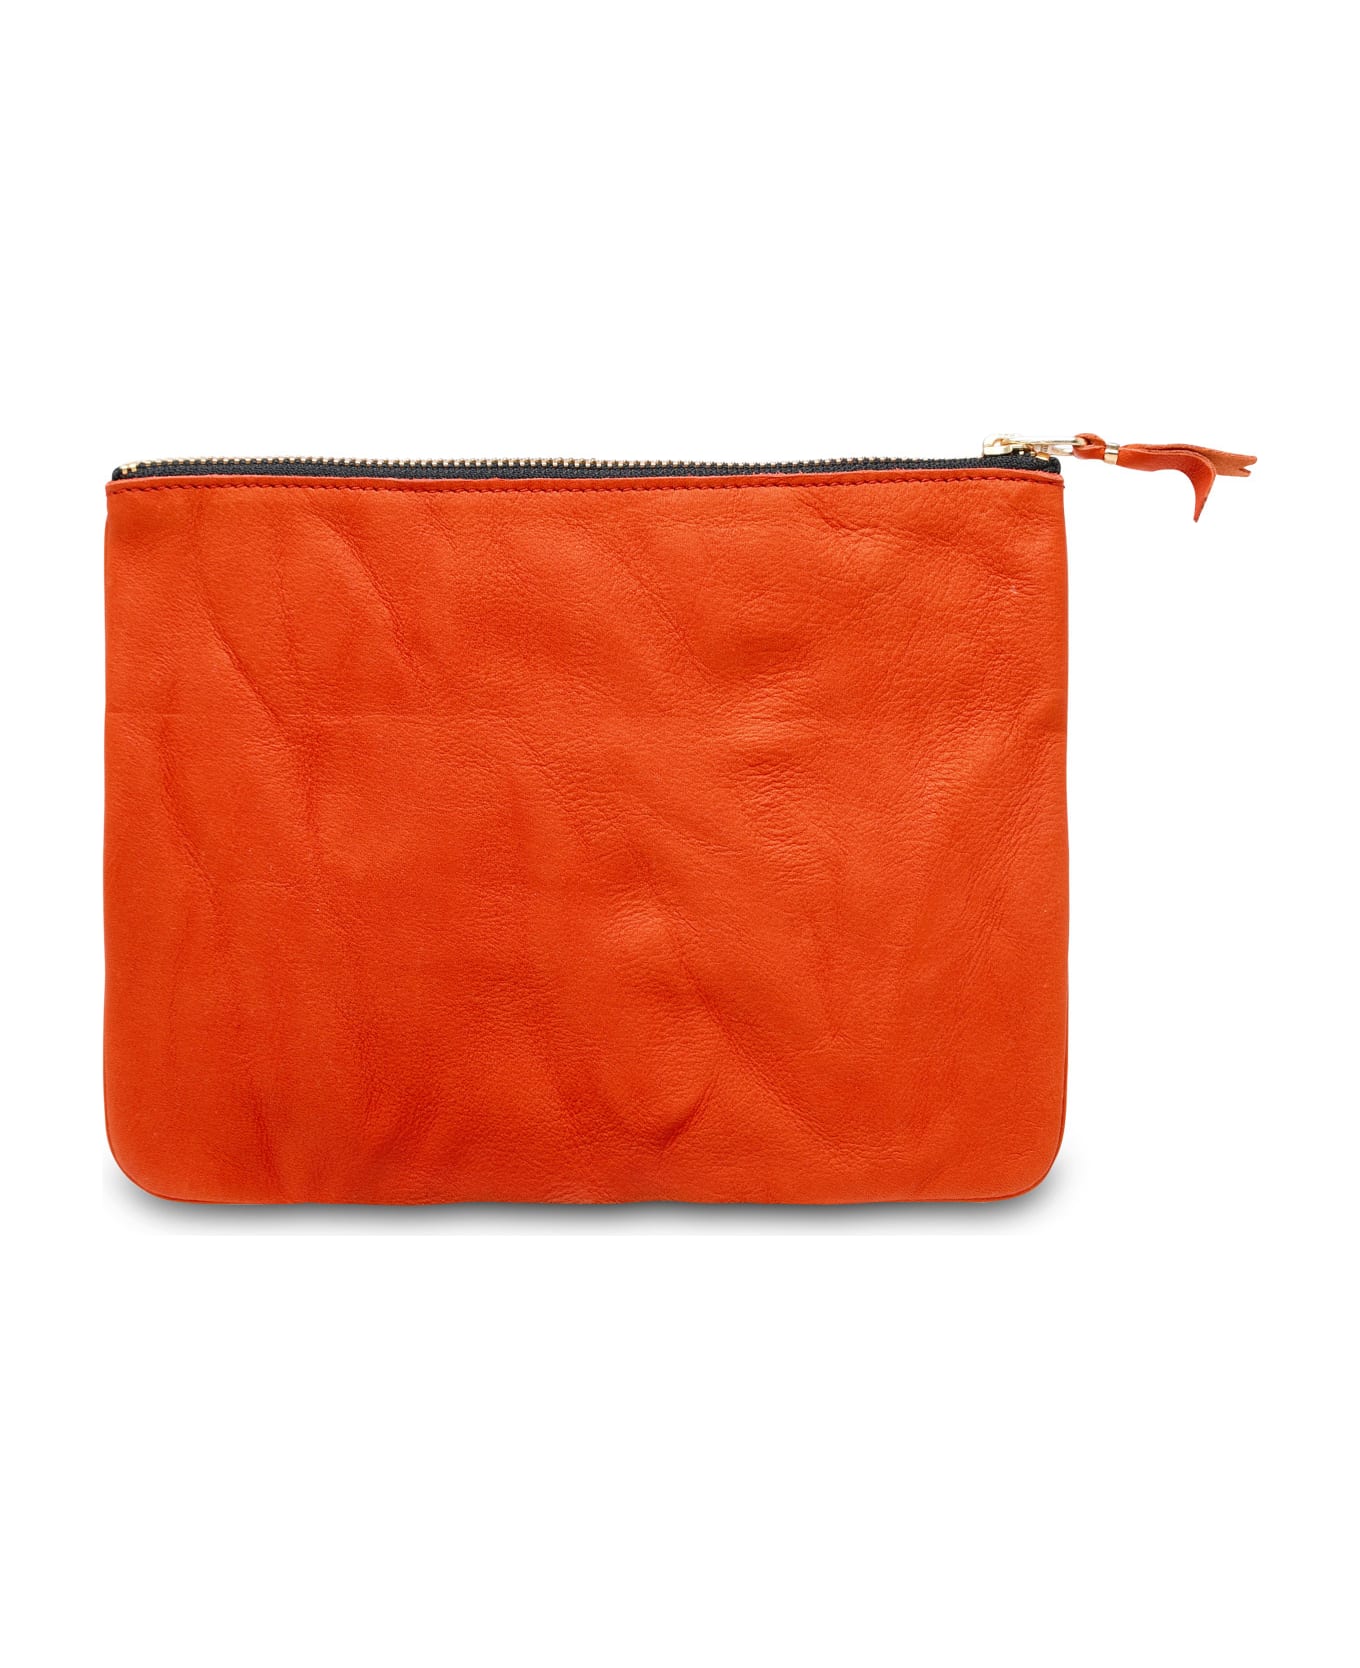 Comme des Garçons Wallet Orange Leather Envelope - Orange